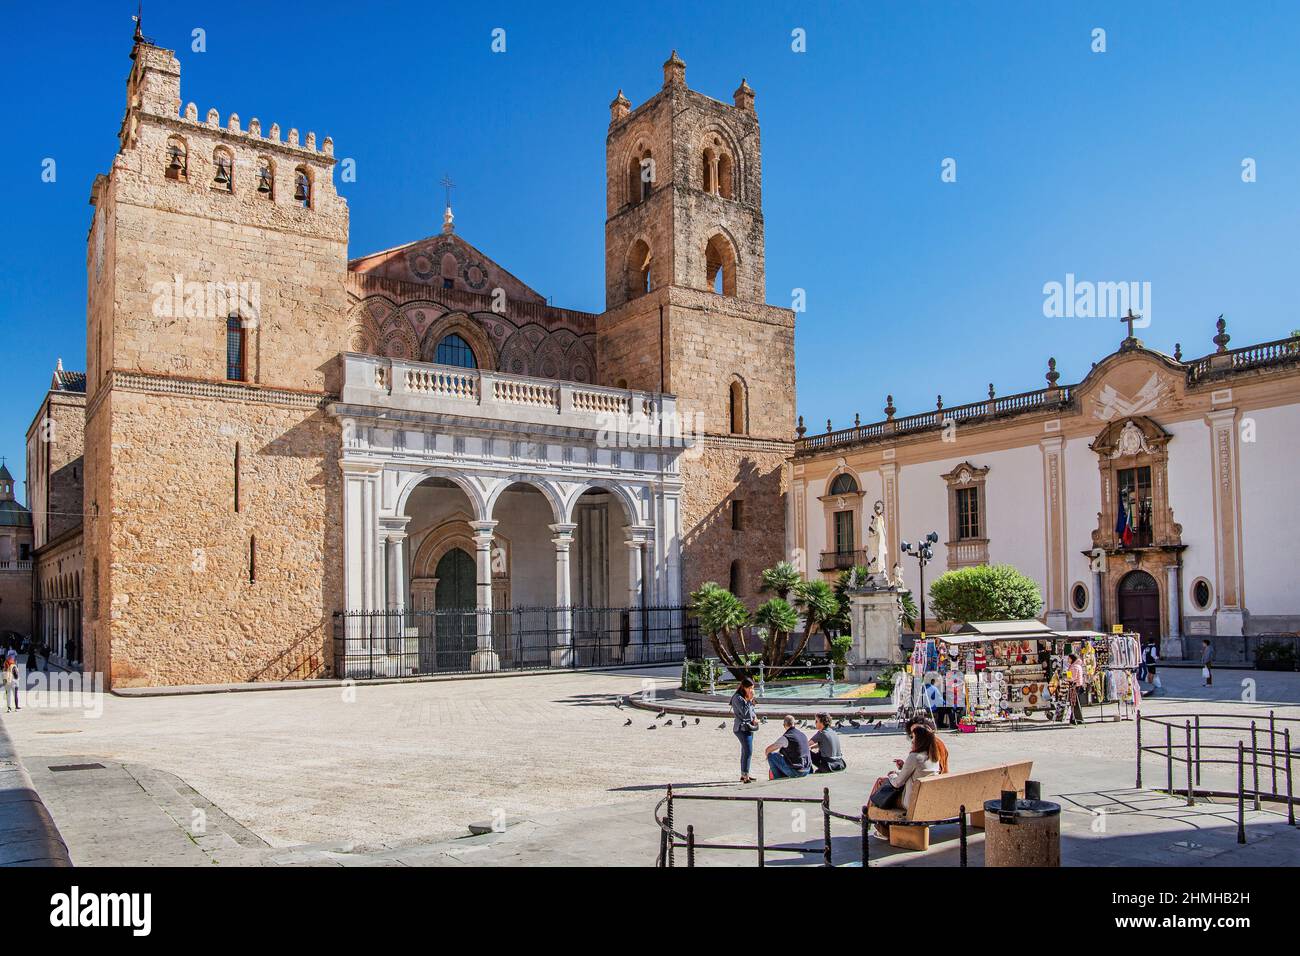 Portale e torri della cattedrale in Piazza Guglielmo II, Monreale, Sicilia, Italia Foto Stock